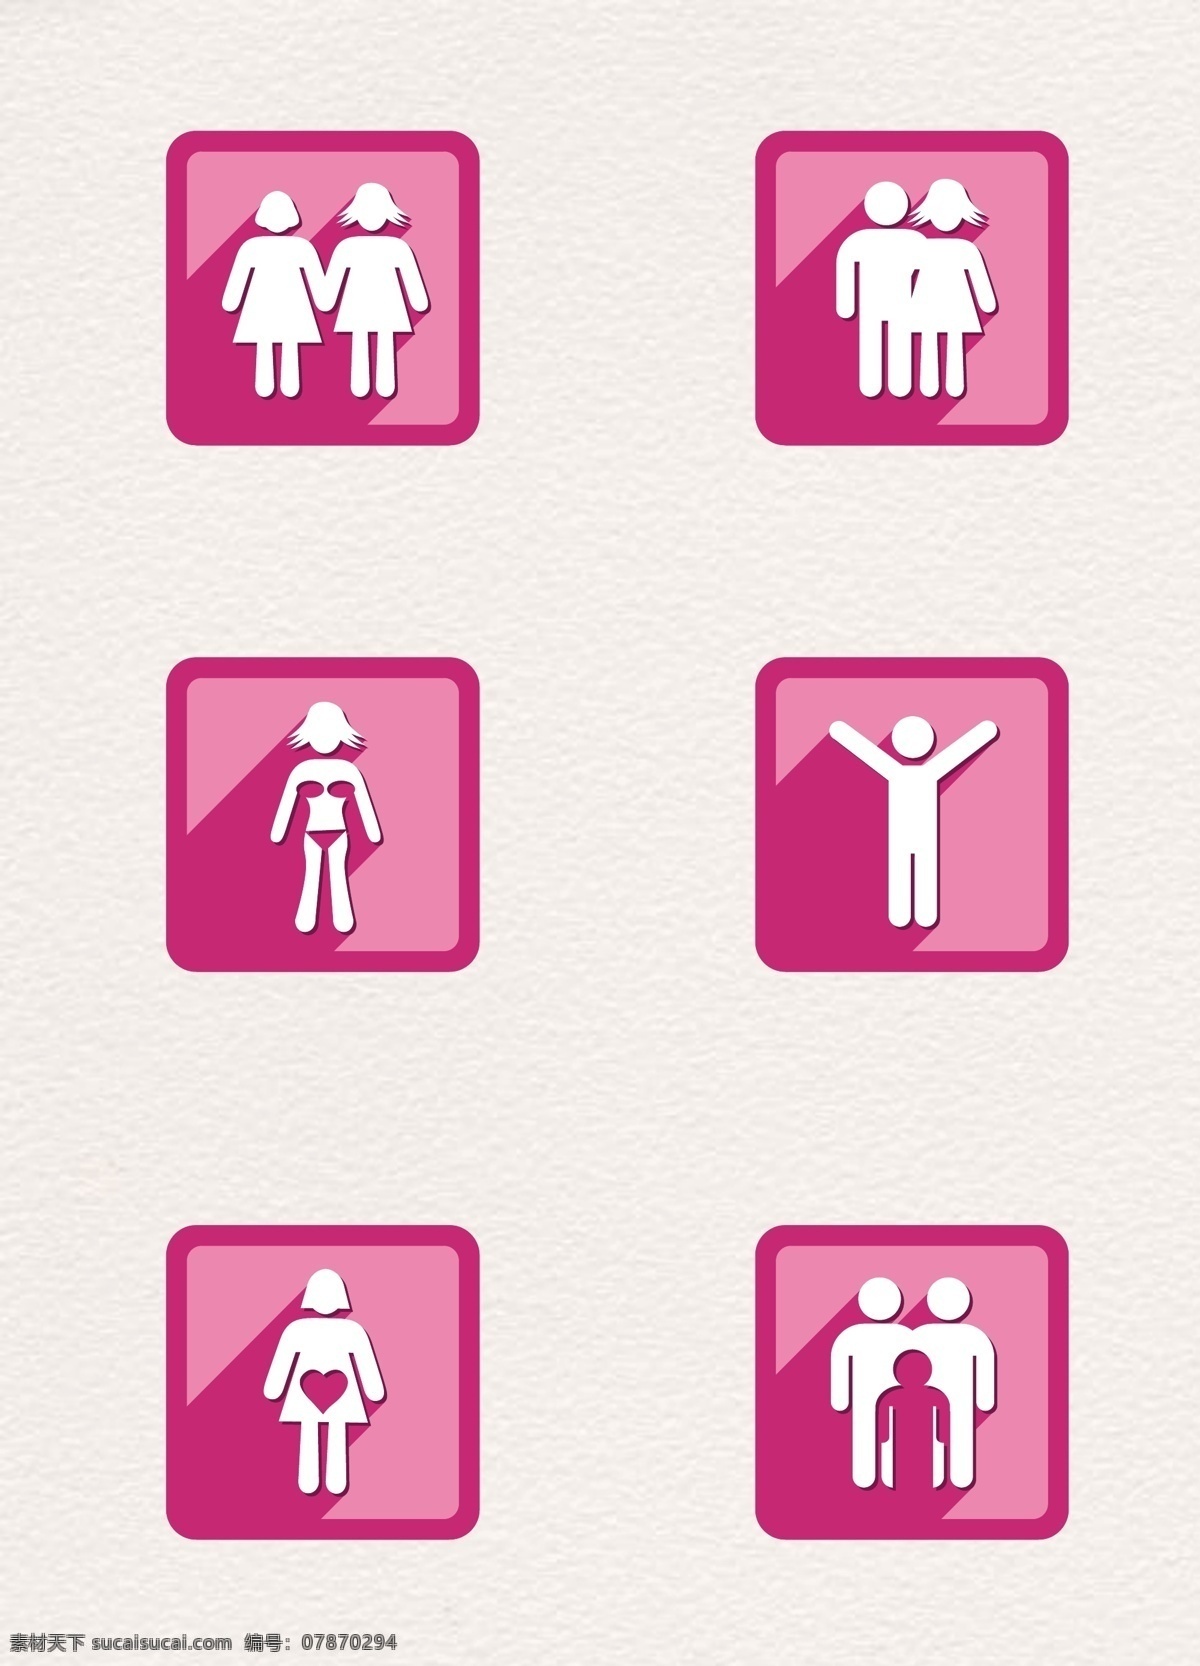 粉色 扁平 人物 图标 元素 卡通 简约 矢量图标 矢量 男士 女士 姐妹 夫妻 一家三口图标